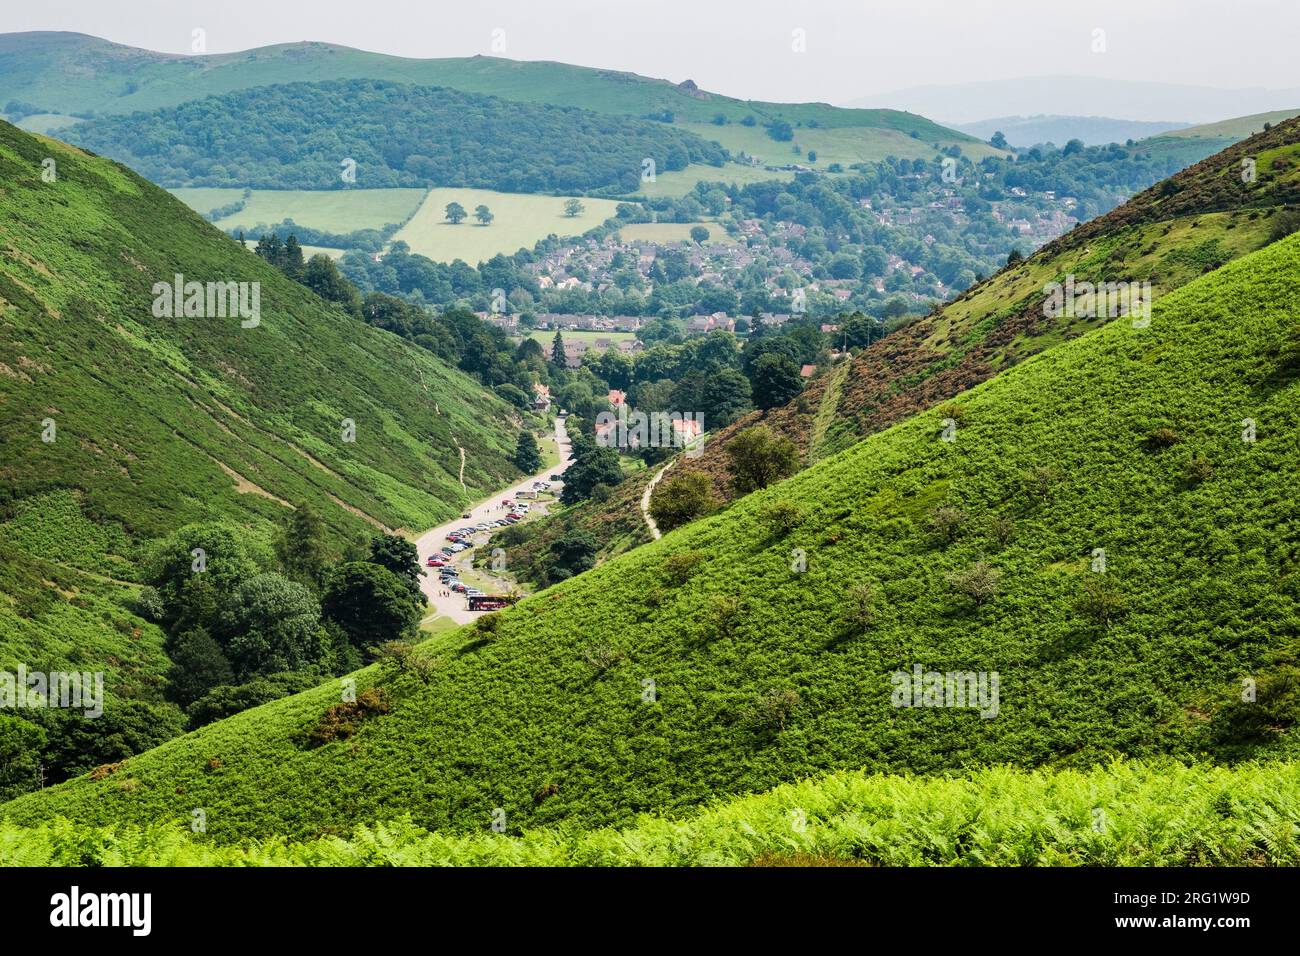 Bracken bedeckte Hügel auf Long Mynd über dem Carding Mill Valley mit Church Stretton dahinter. Shropshire, England, Großbritannien, Großbritannien Stockfoto